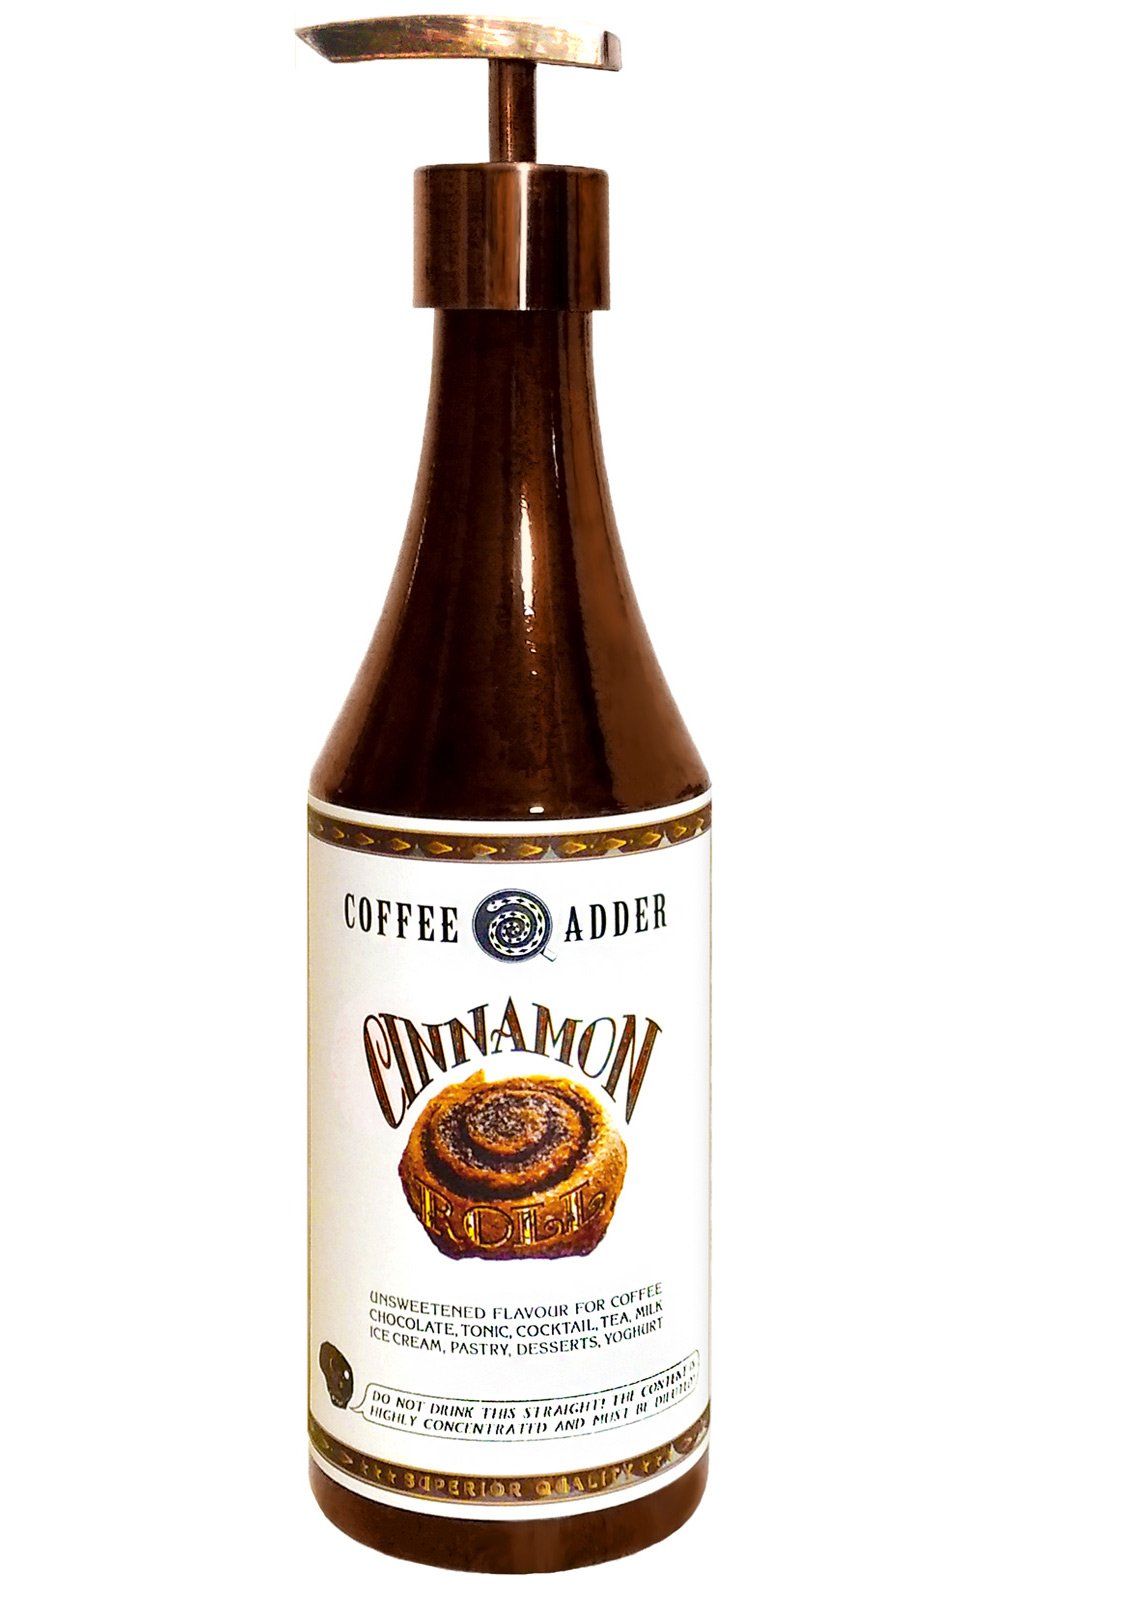 Cinnamon Bun coffee syrup